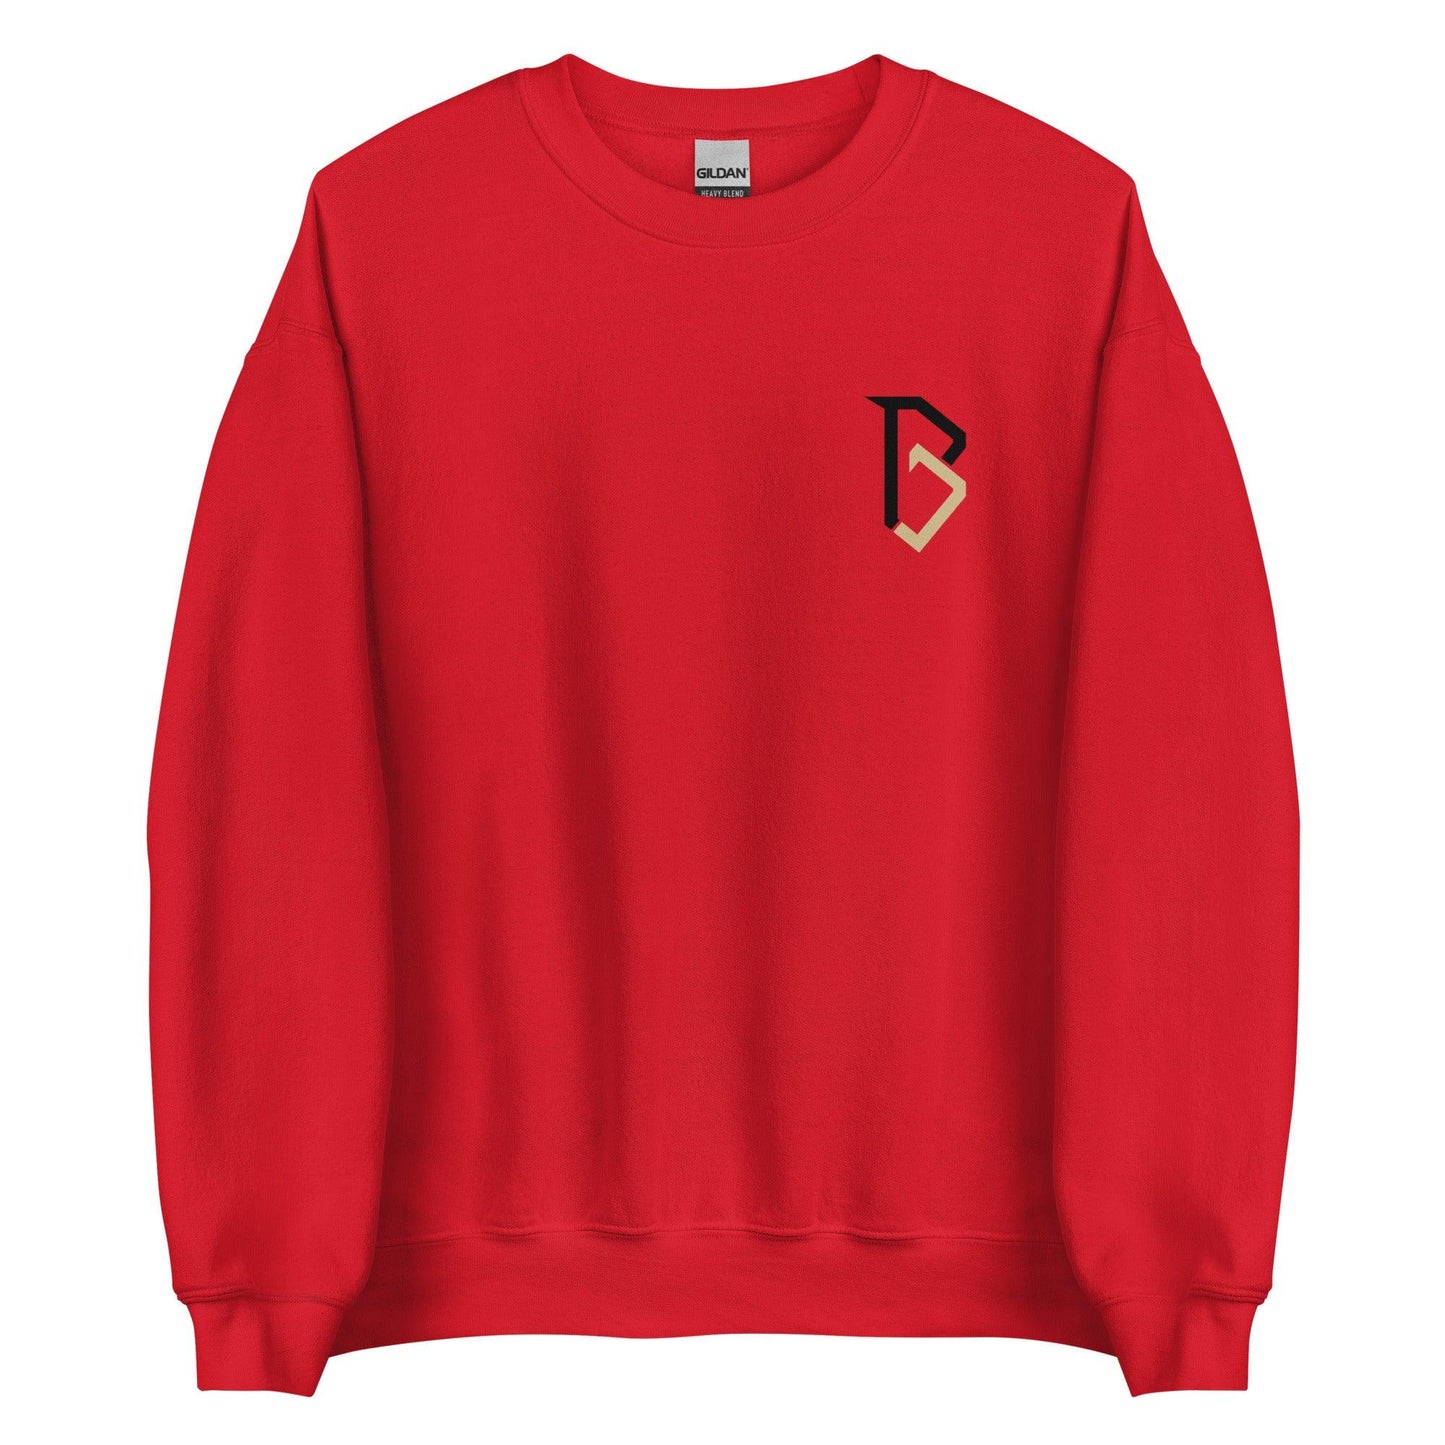 BJ Diakite "Essential" Sweatshirt - Fan Arch